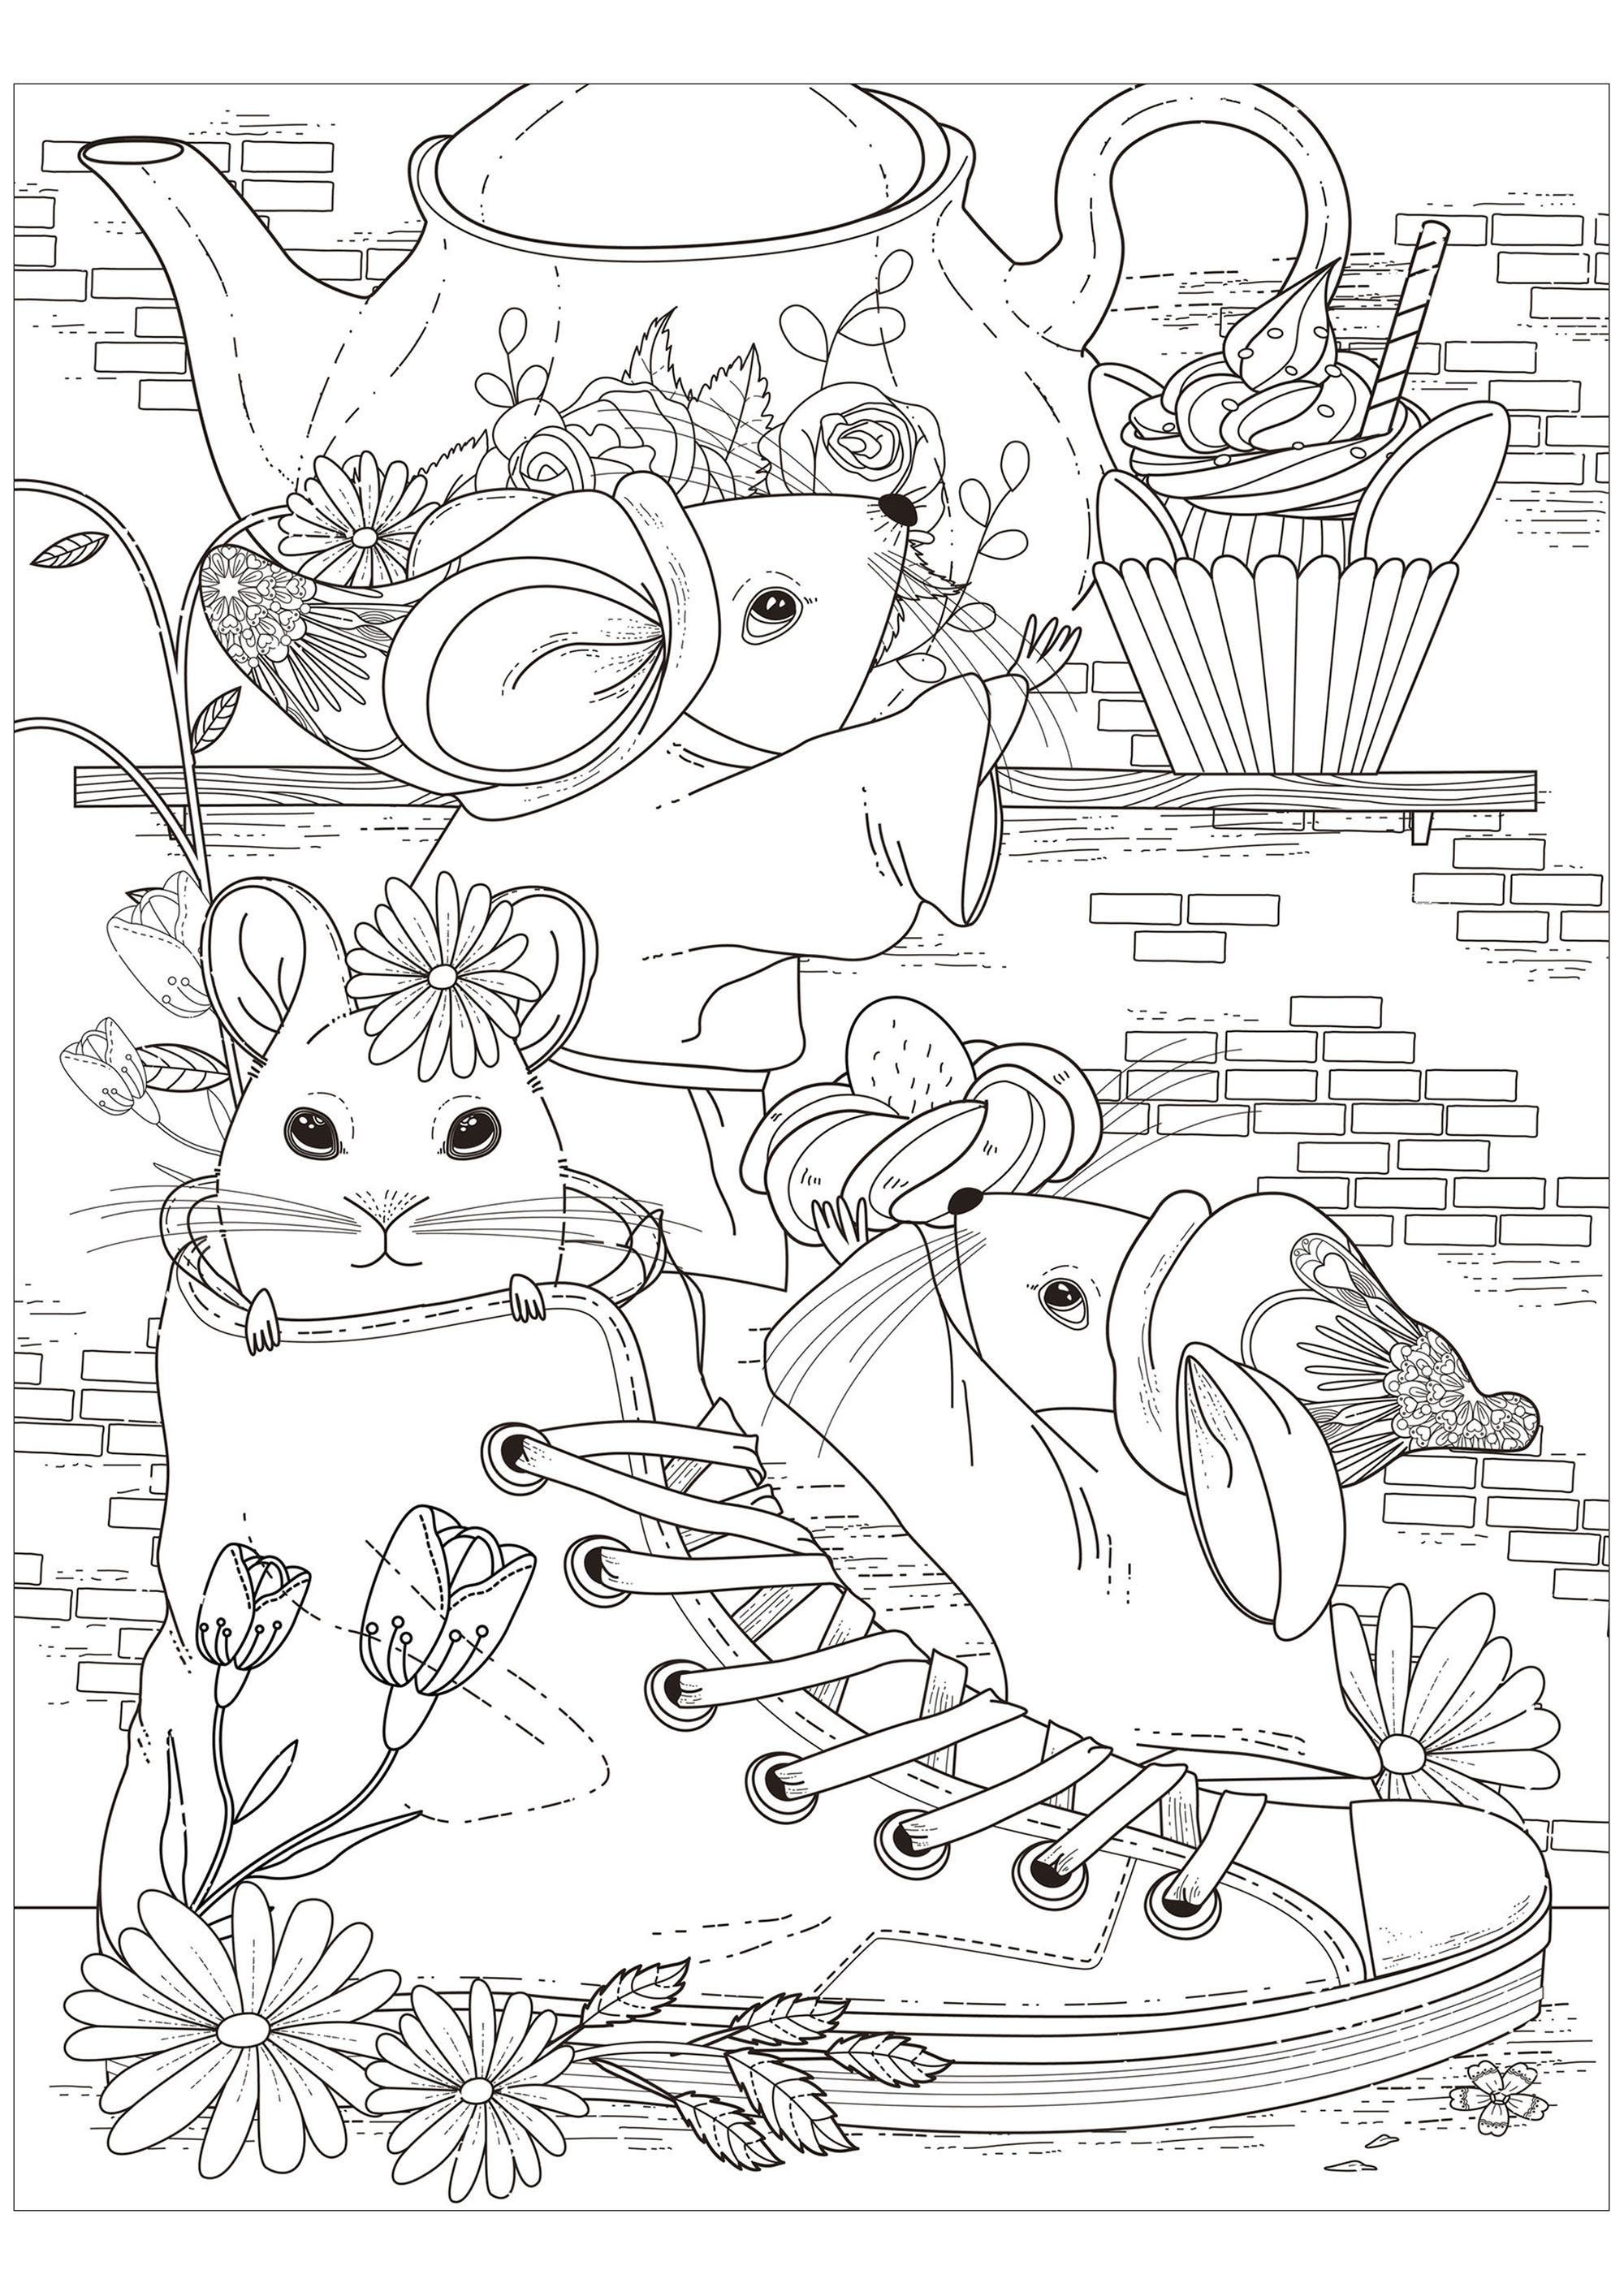 Pagina da colorare di tre topi che prendono il tè con uno di loro in una scarpa, Fonte : 123rf   Artista : Kchung